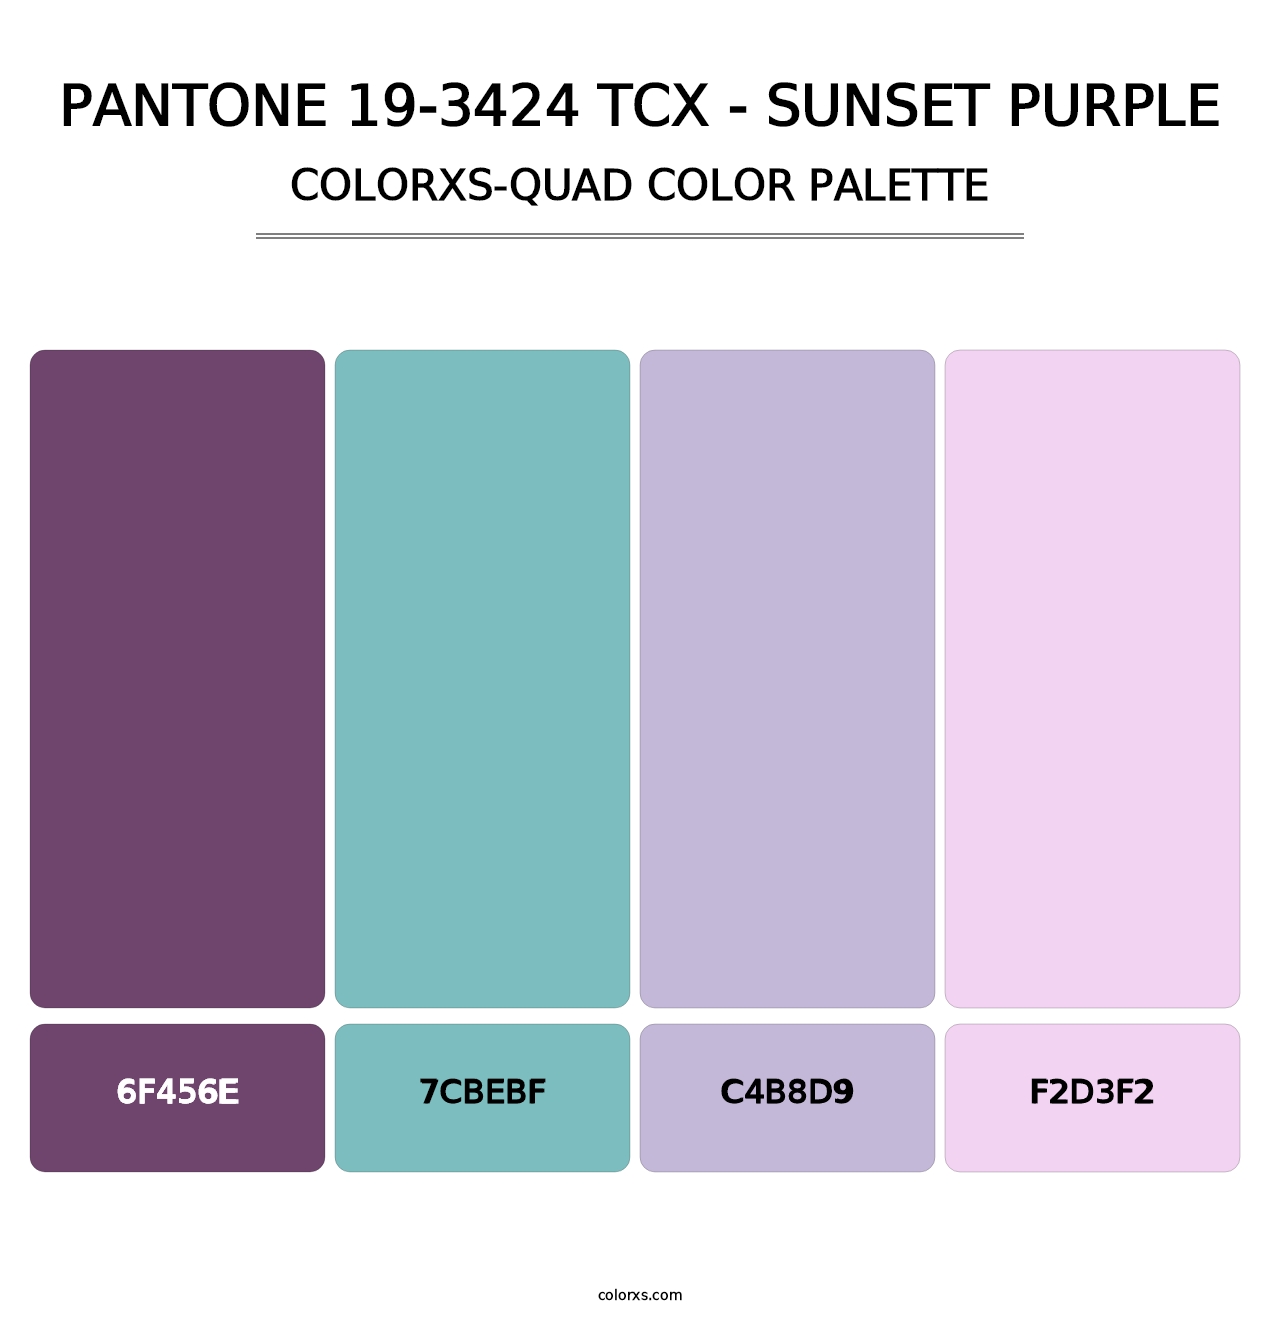 PANTONE 19-3424 TCX - Sunset Purple - Colorxs Quad Palette